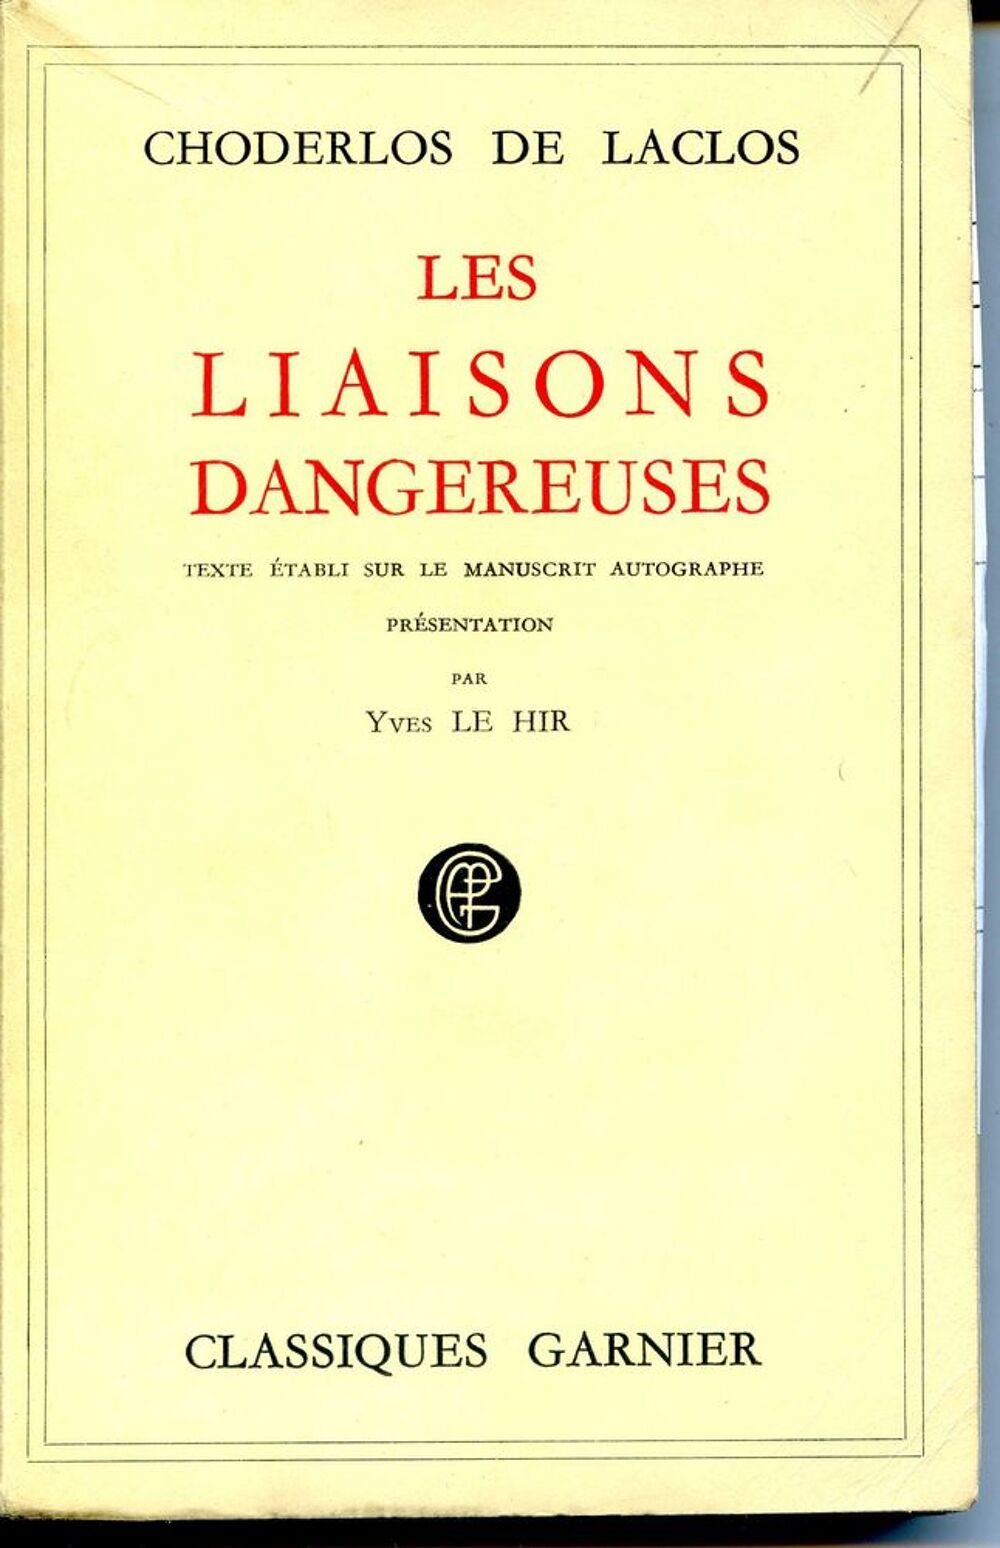 Les liaisons dangereuses - Choderlos de Laclos, Livres et BD